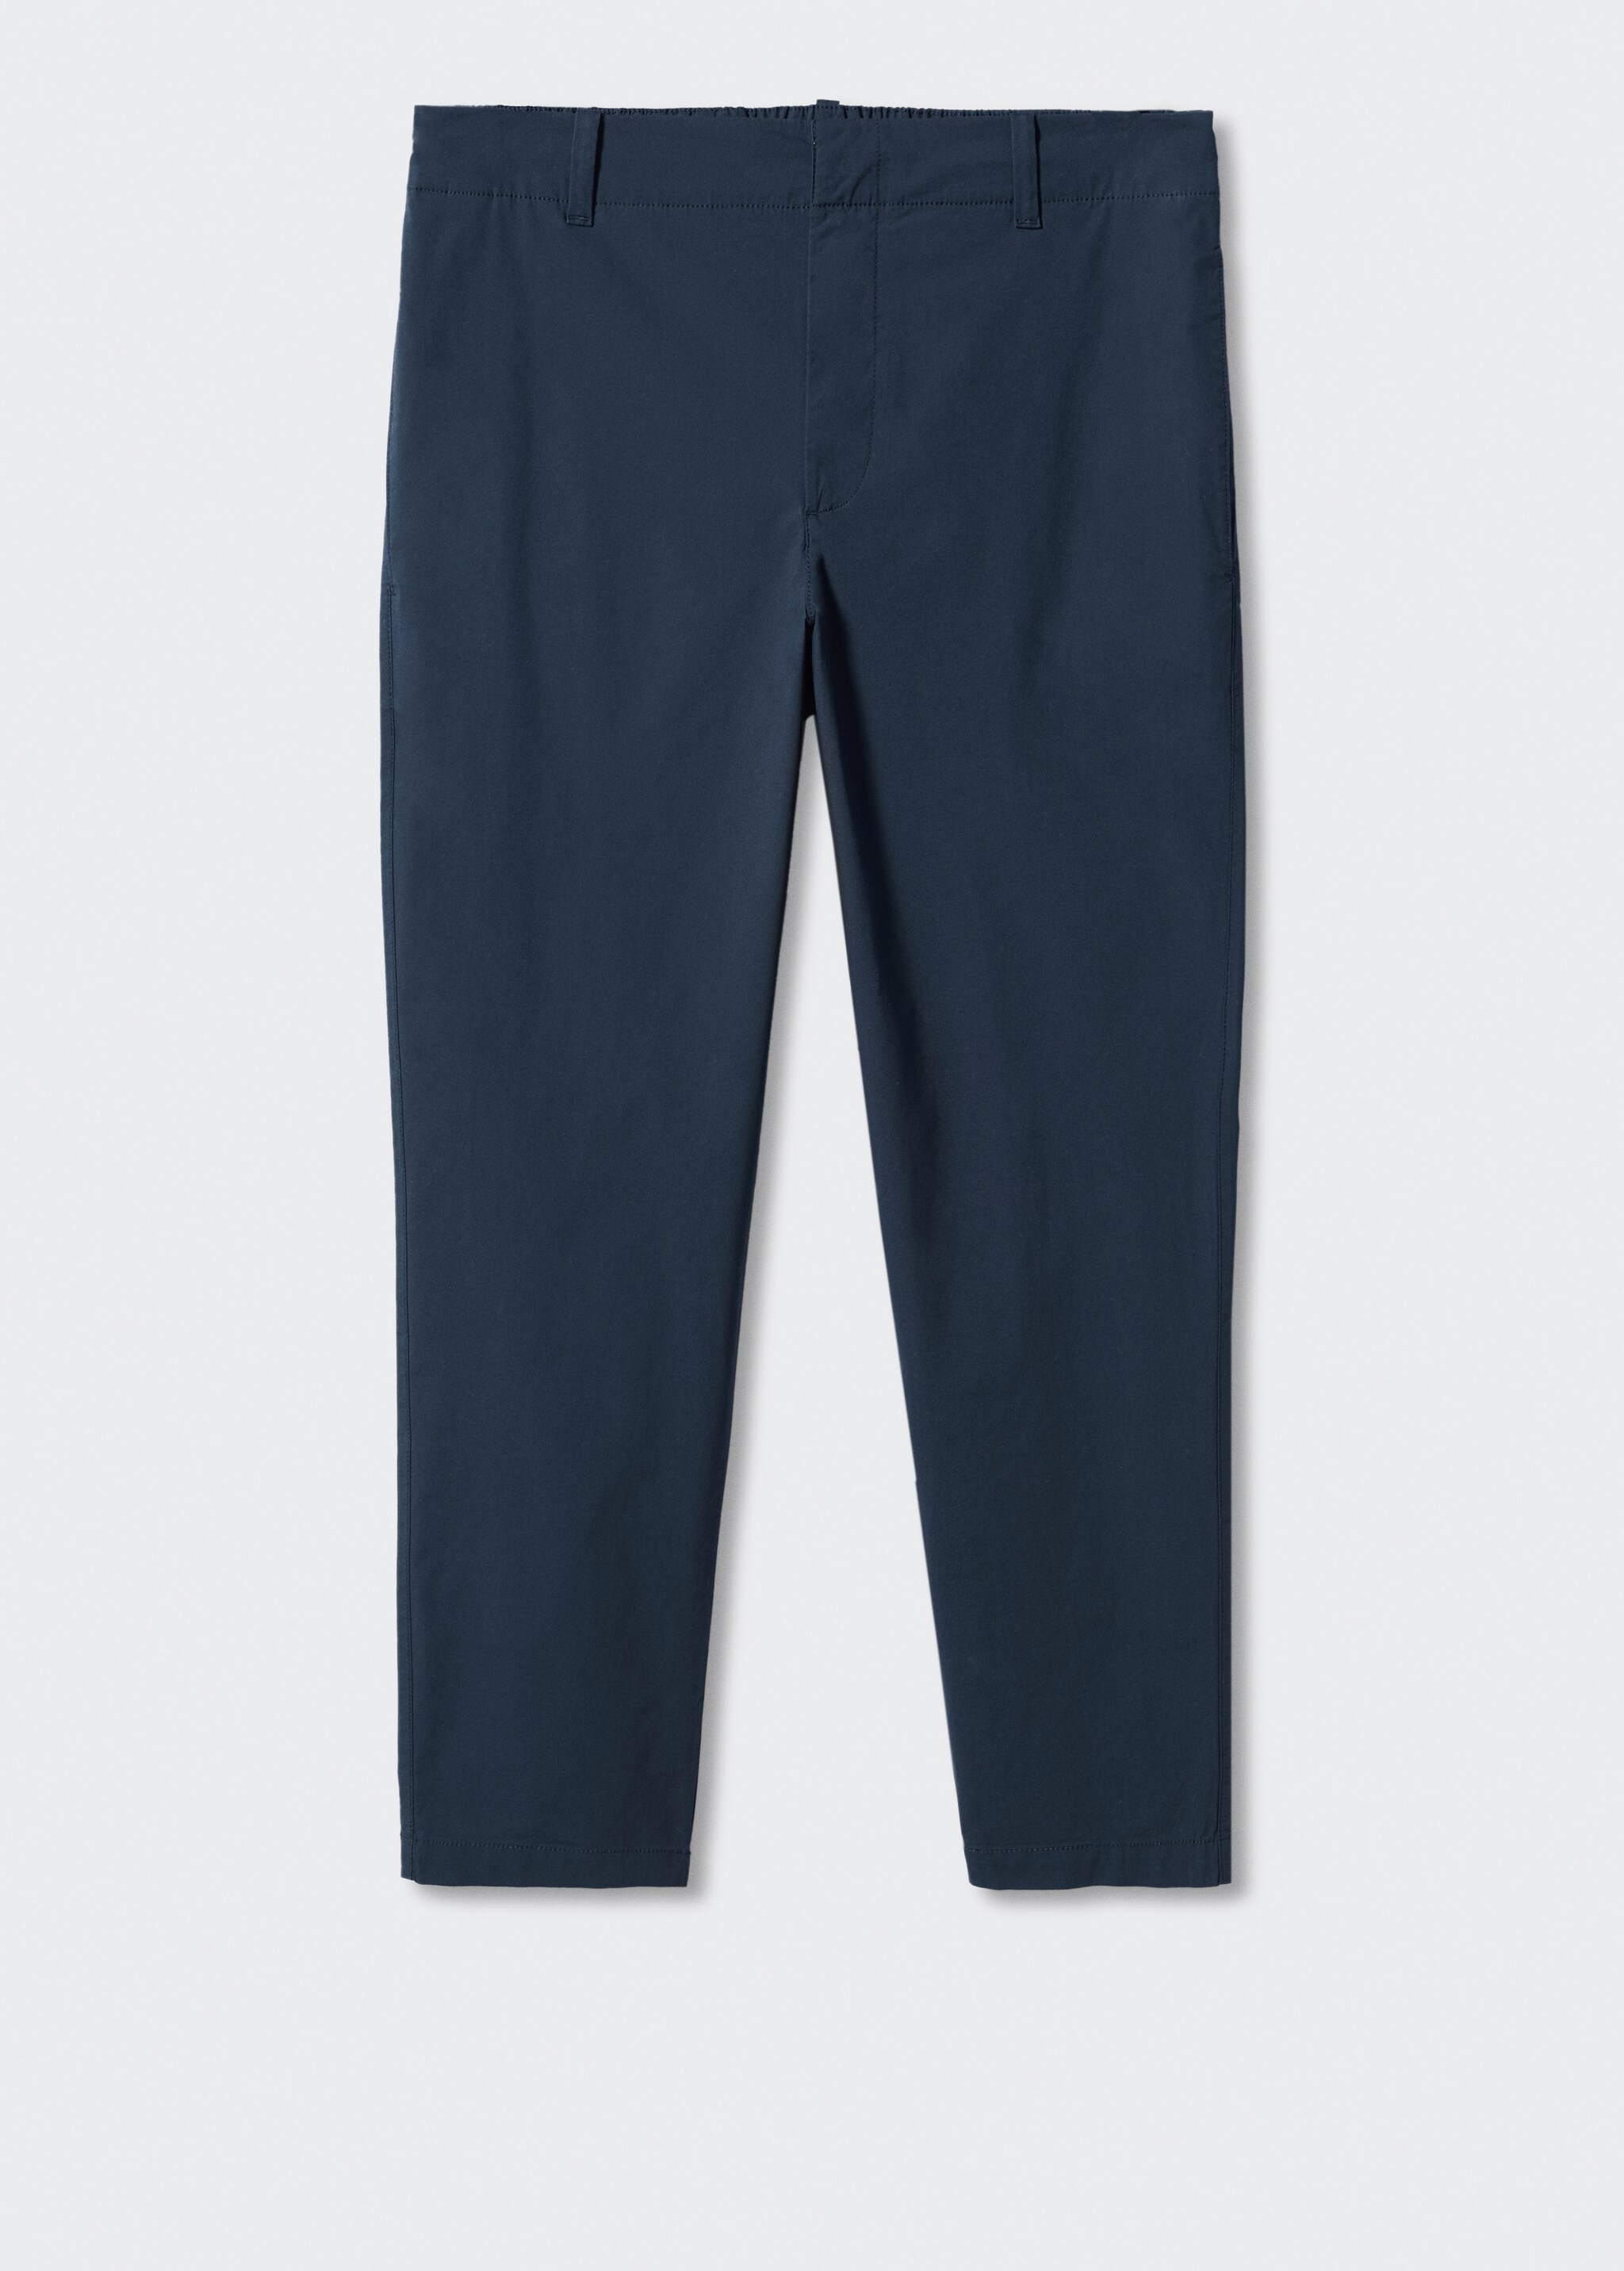 Pantalons slim fit cotó - Artículo sin modelo